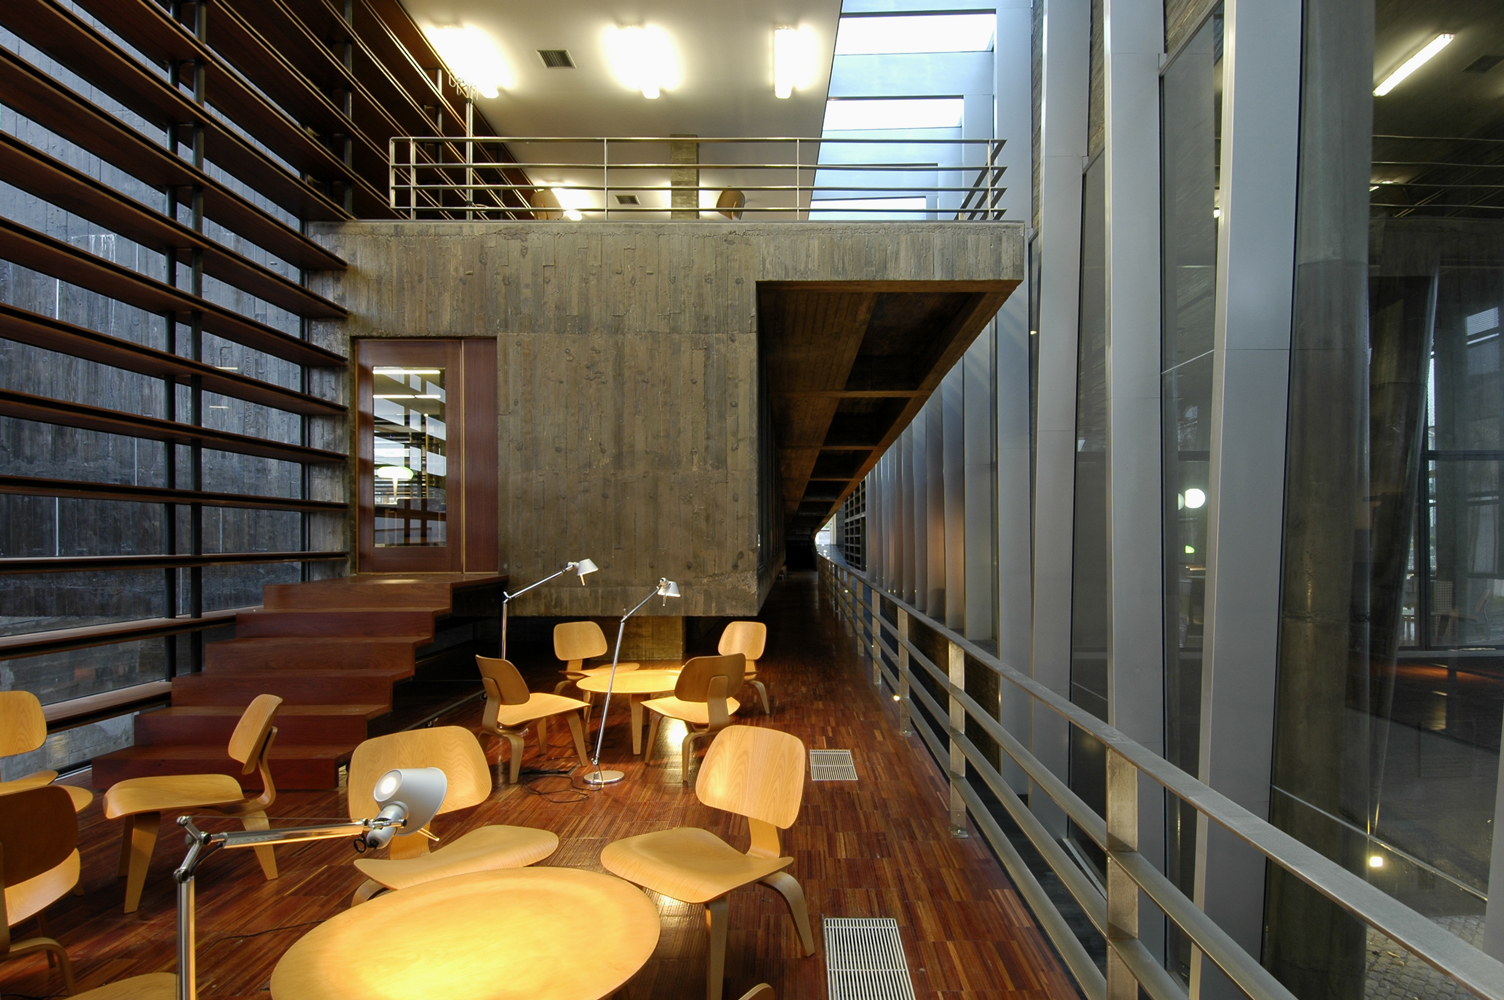 Imagem 6 - Biblioteca Central da Universidade dos Açores